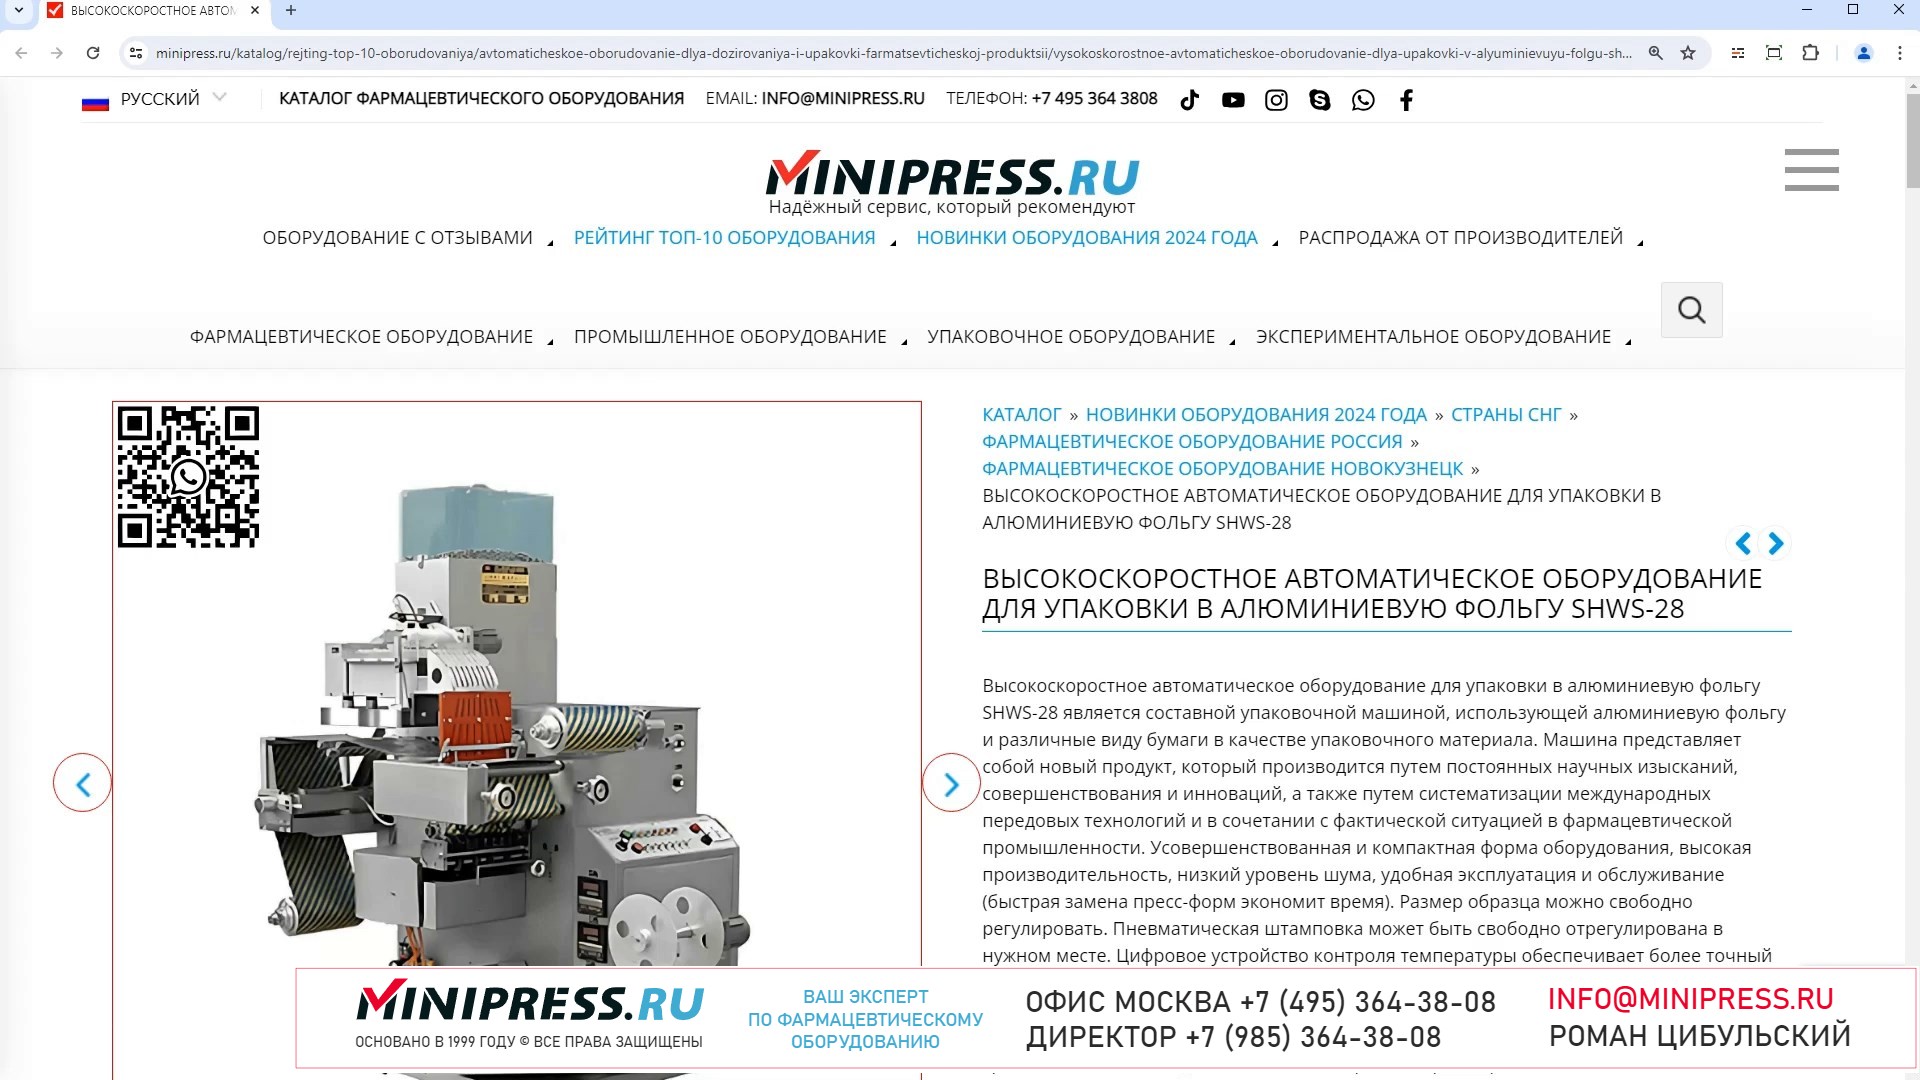 Minipress.ru Высокоскоростное автоматическое оборудование для упаковки в алюминиевую фольгу SHWS-28